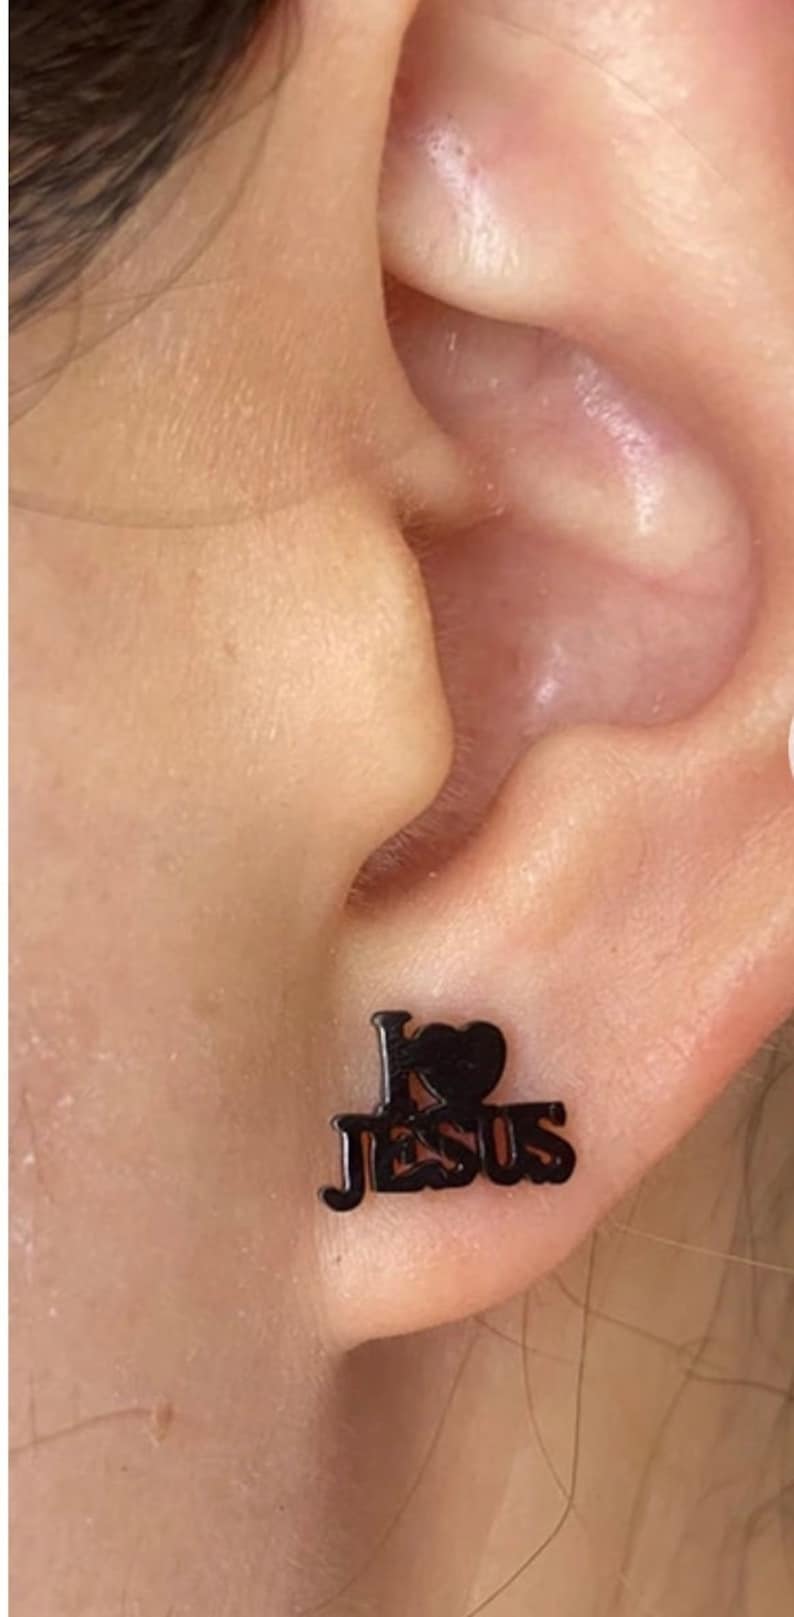 I Love JESUS Earring for Girls Black Gold Silver Lettering I Black